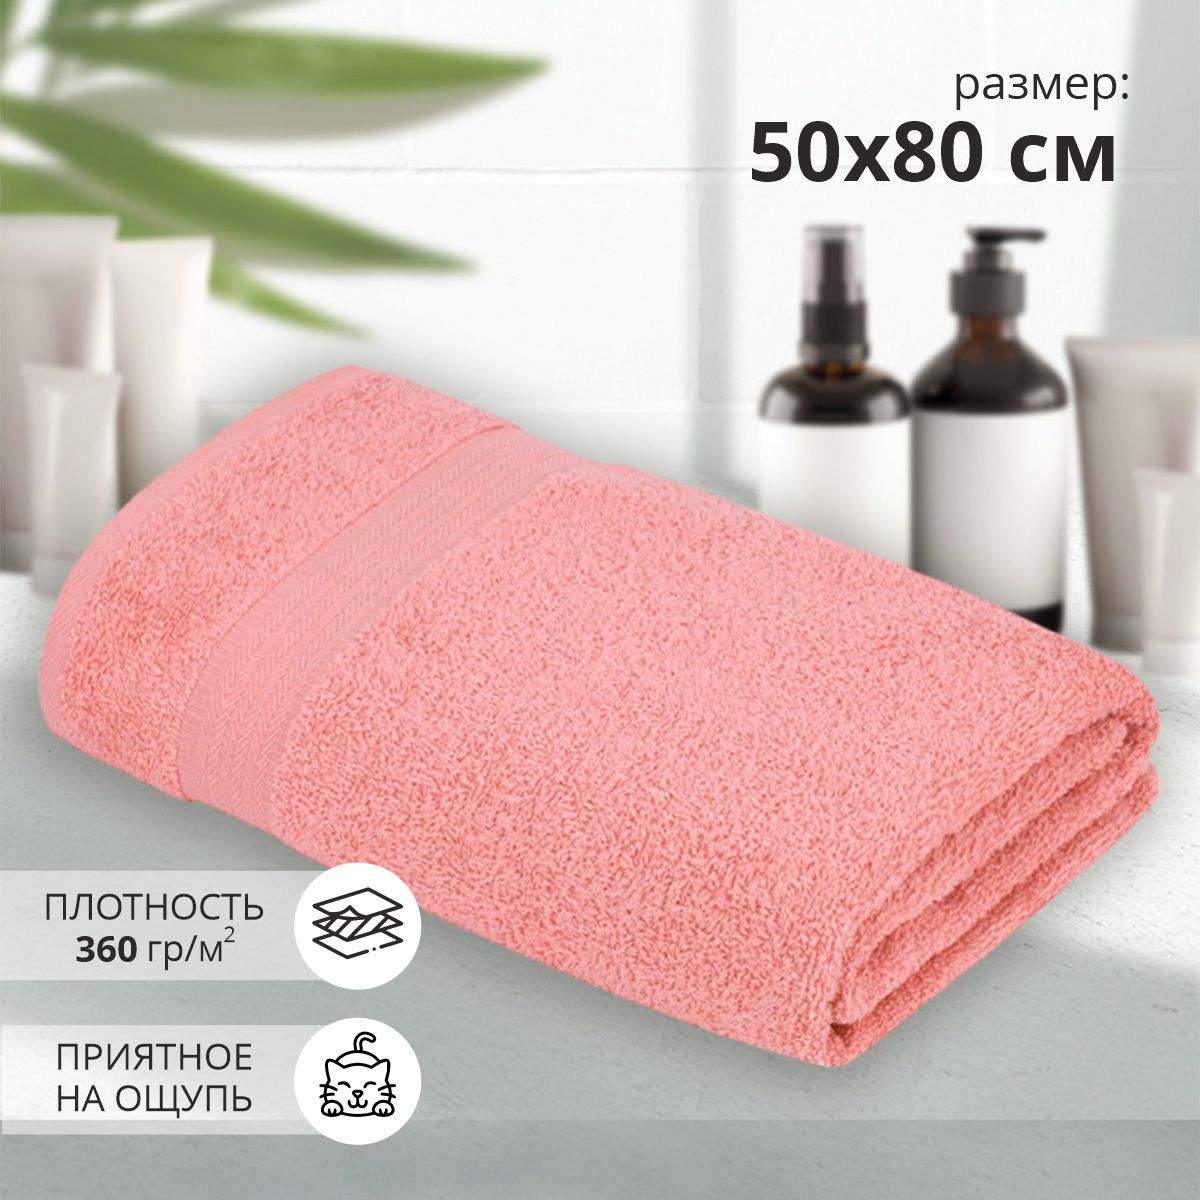 Махровое полотенце УЗ Сулх м7044_02 M 50x 80 роз купить в интернет-магазине, цены на Мегамаркет